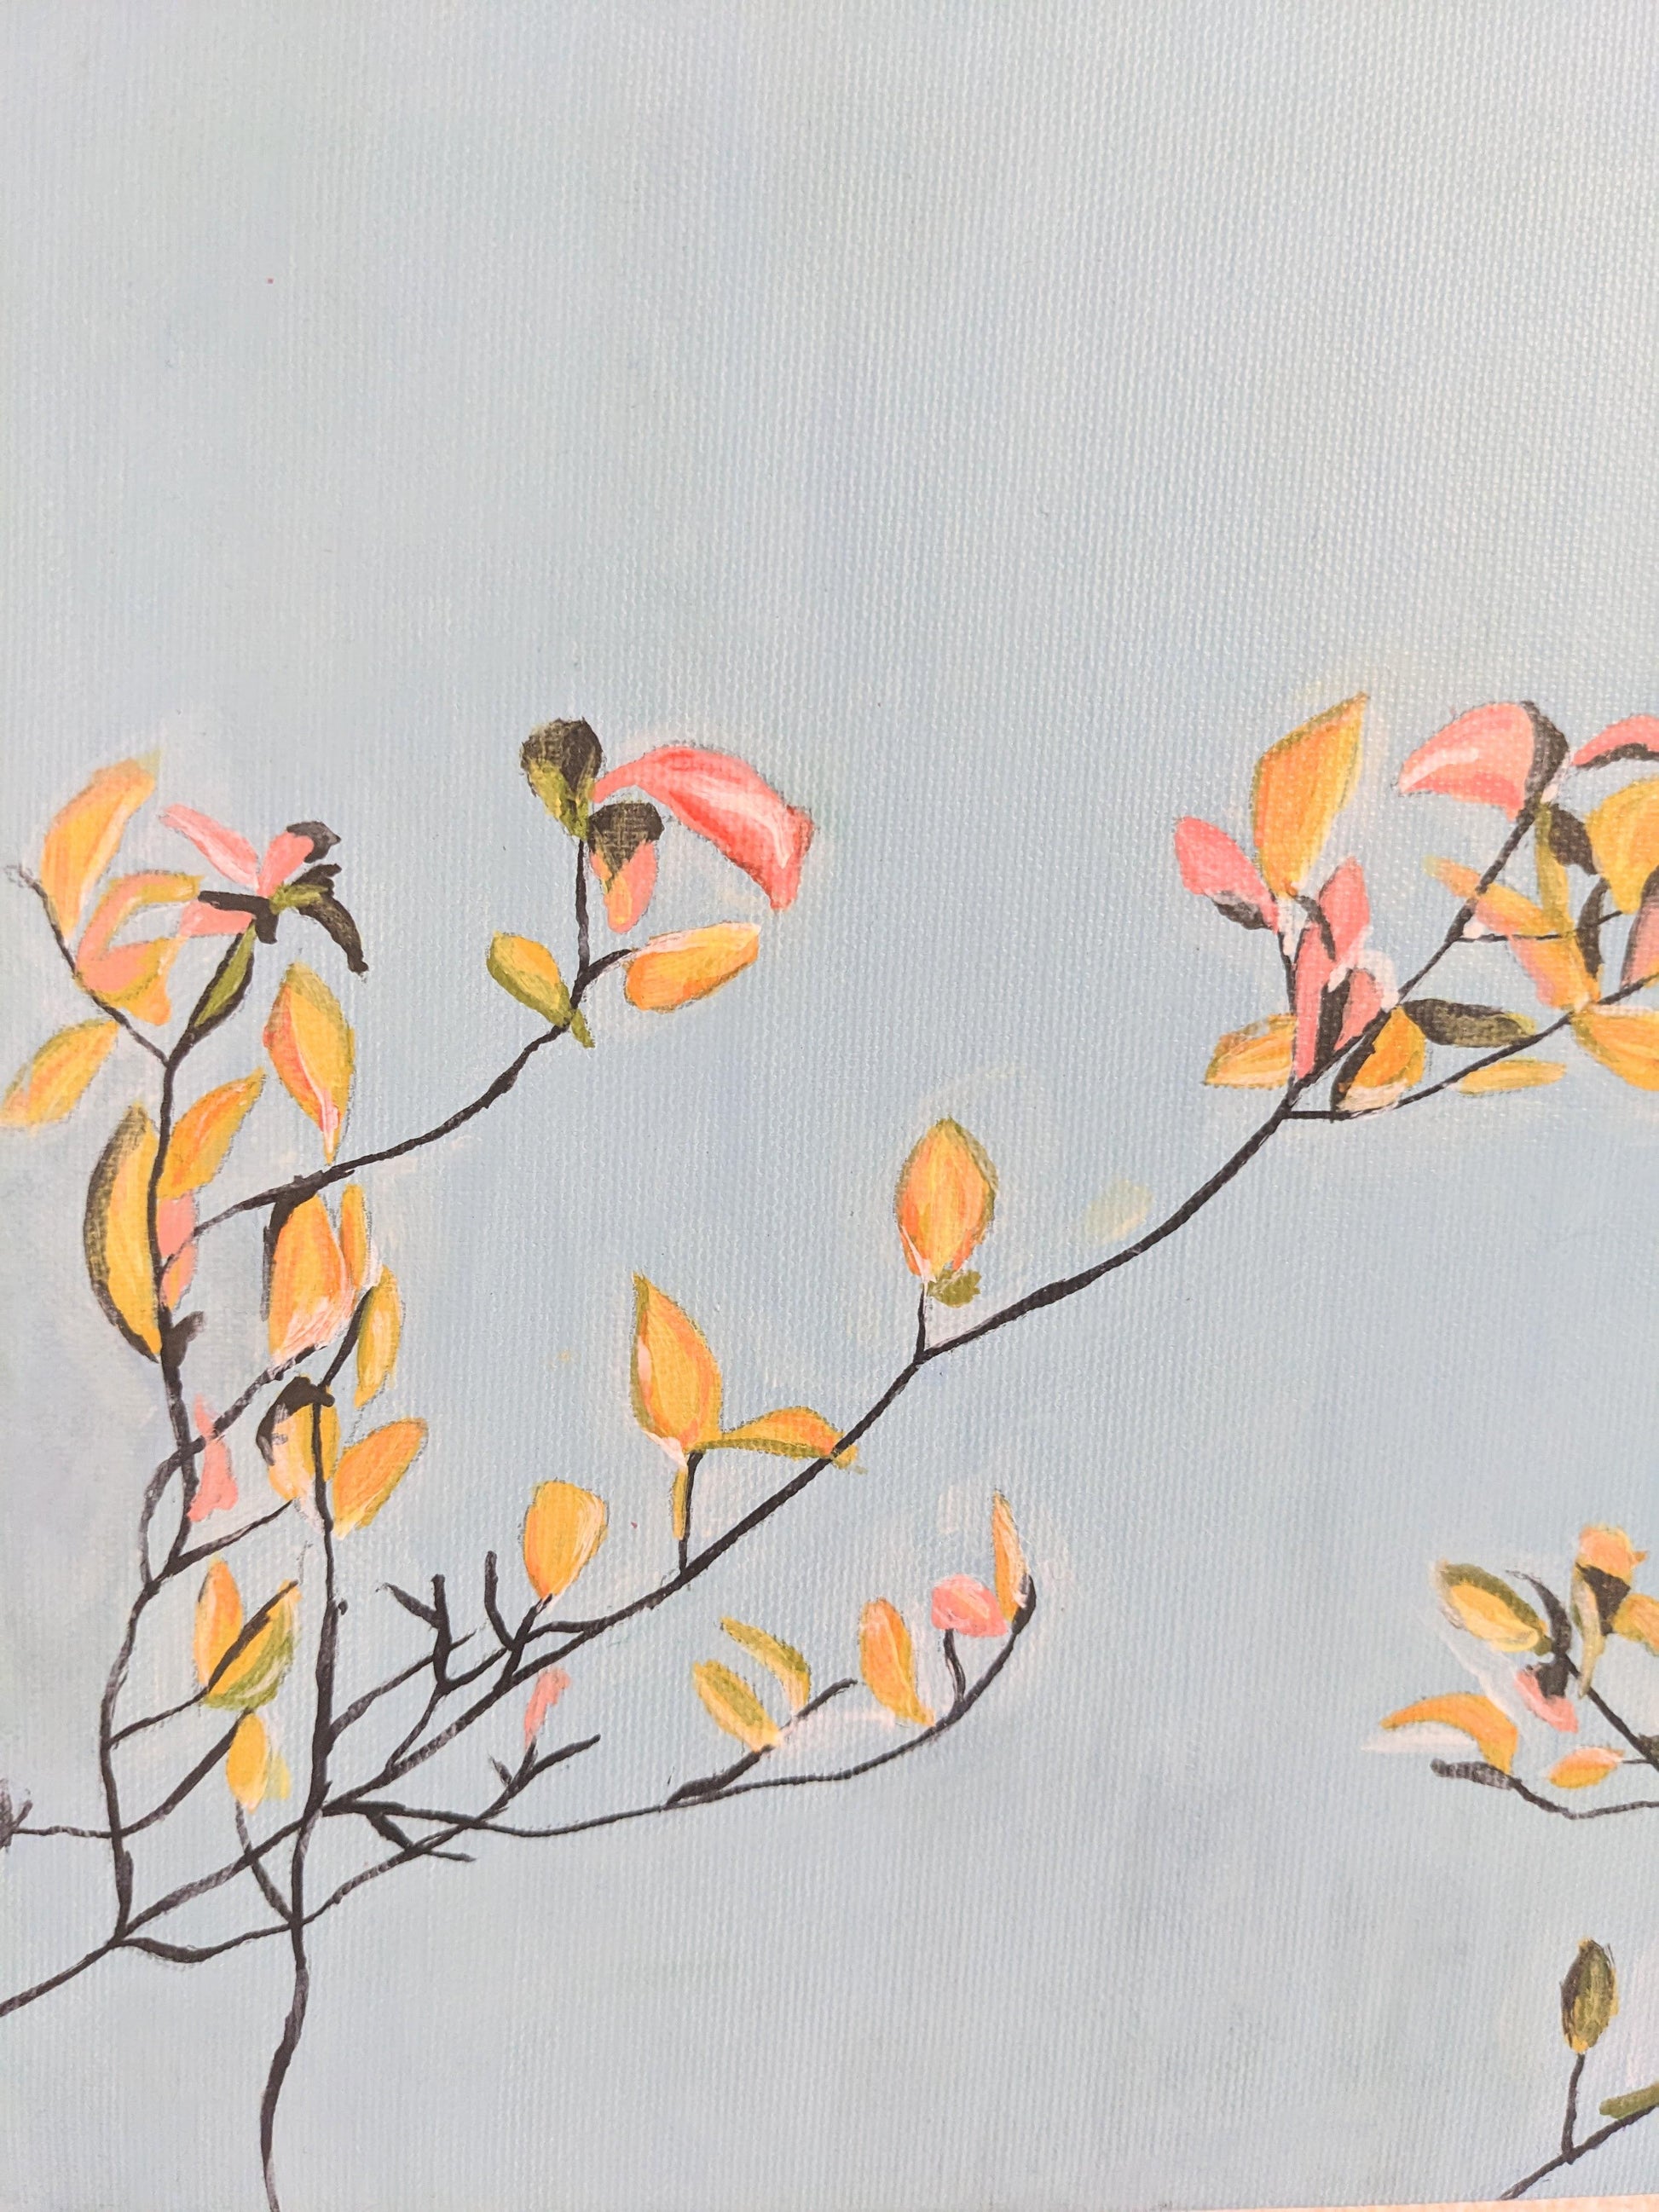 『花のような木（A tree like flowers）』 - FROM ARTIST